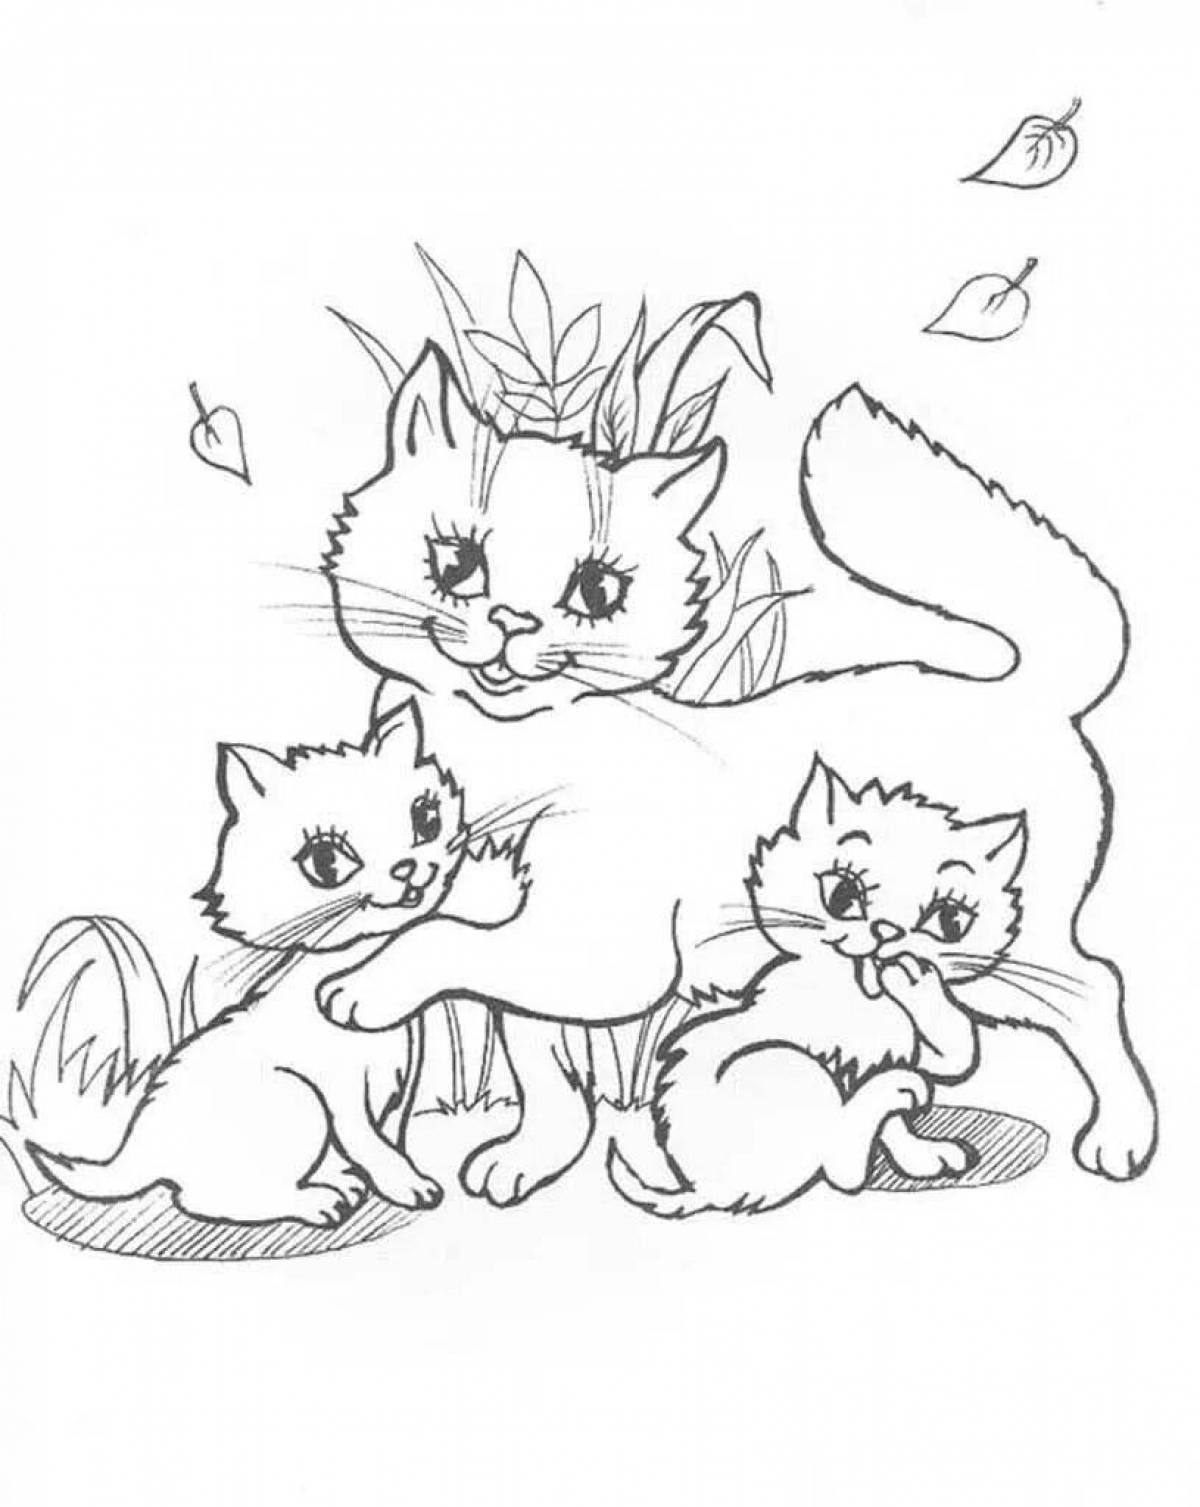 Разукрашка кошка с котятами